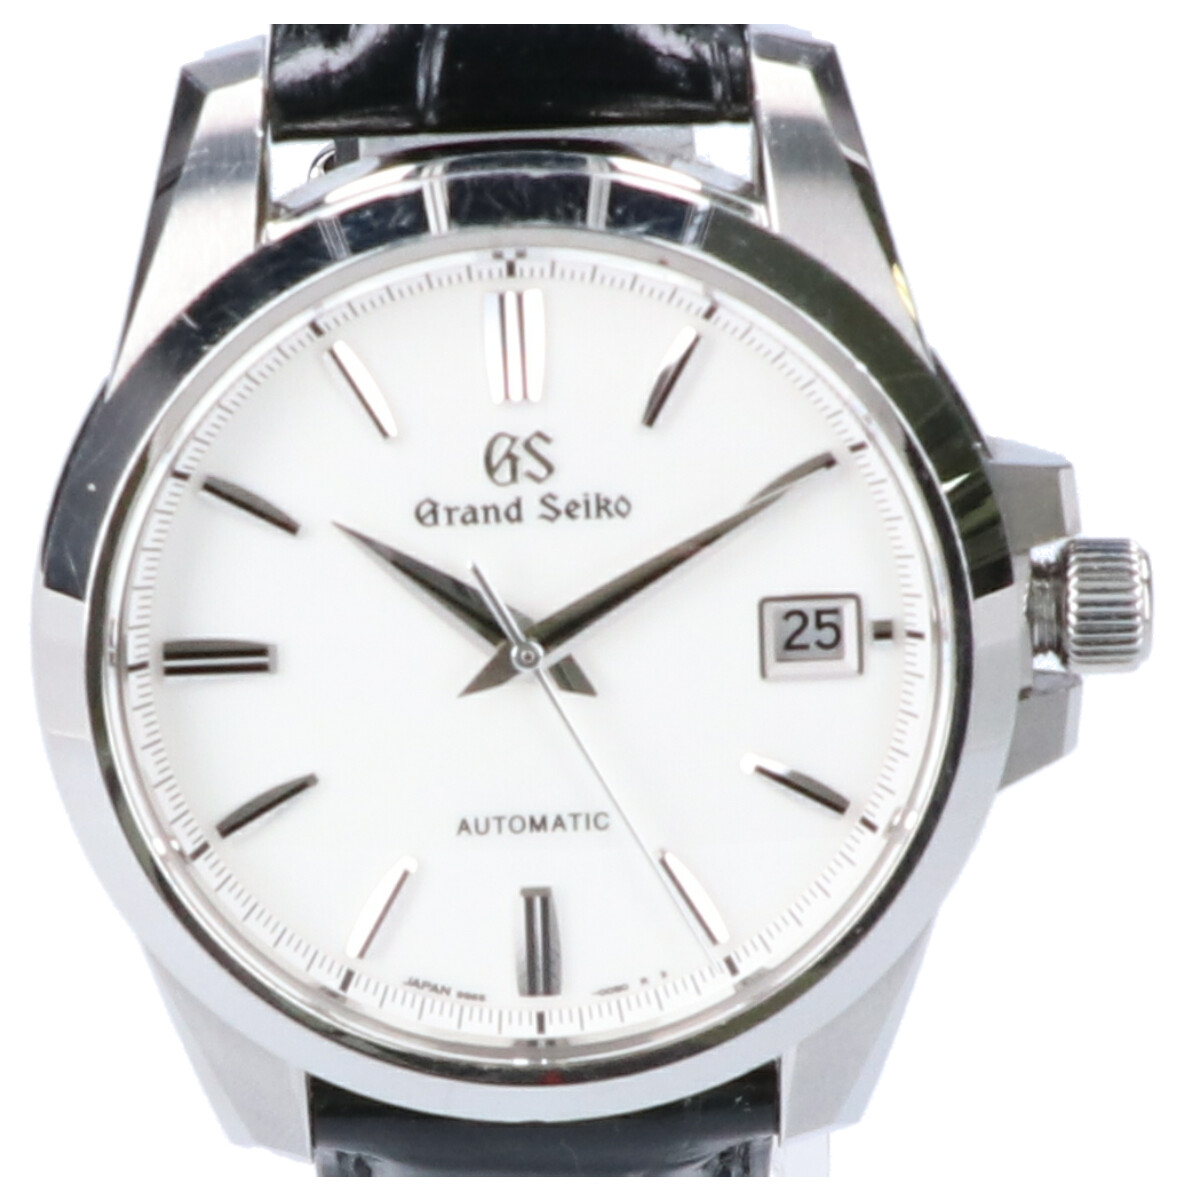 グランドセイコーのSBGR255 9Sメカニカル シースルーバック 自動巻き 腕時計の買取実績です。